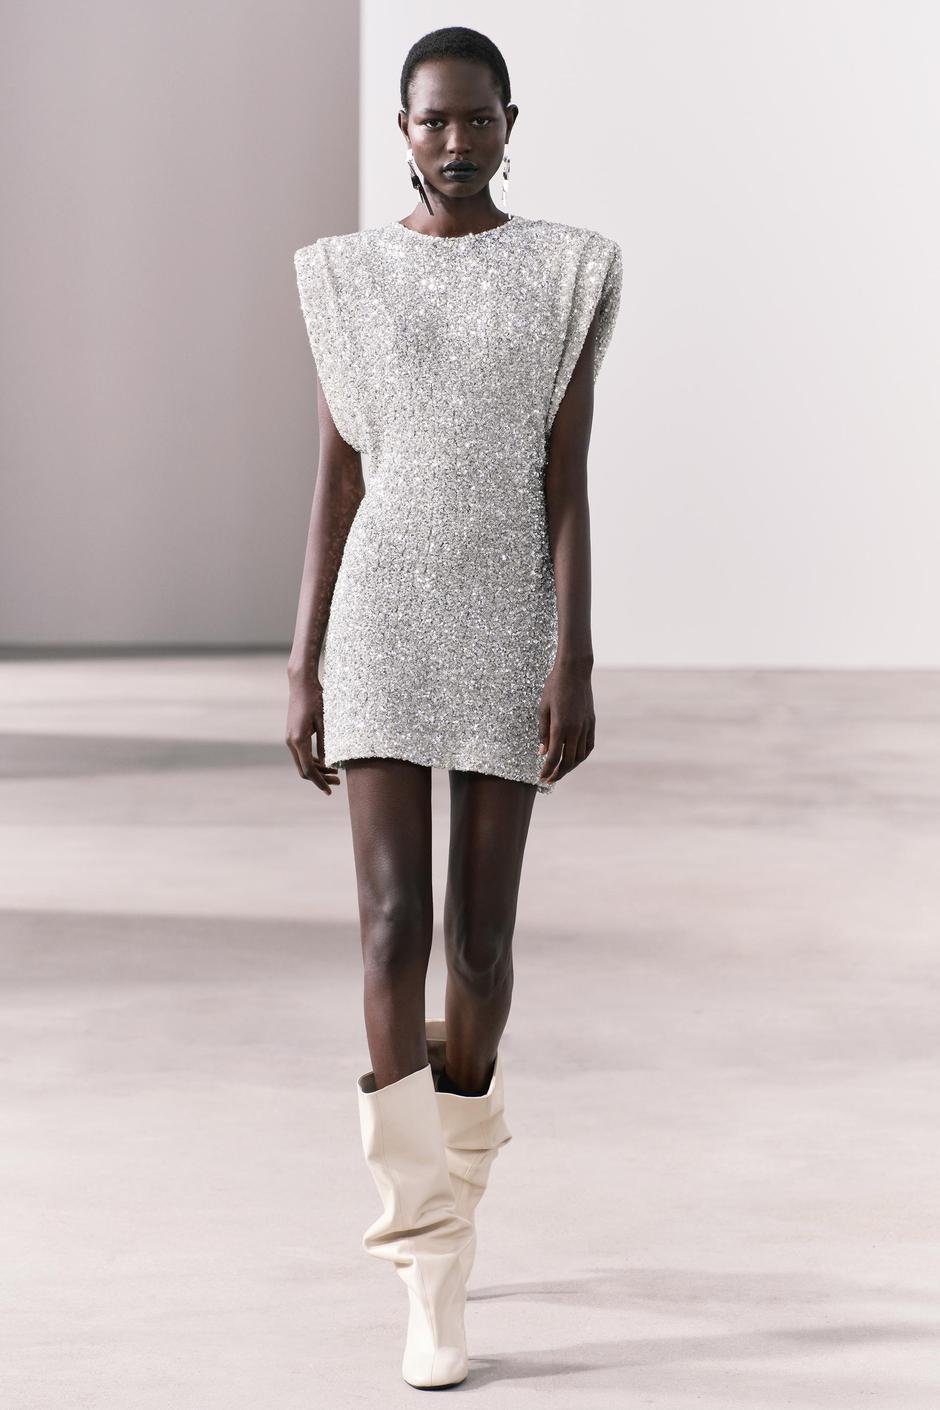 Foto: Zara, viralna haljina sa srebrnim šljokicama | Autor: Zara